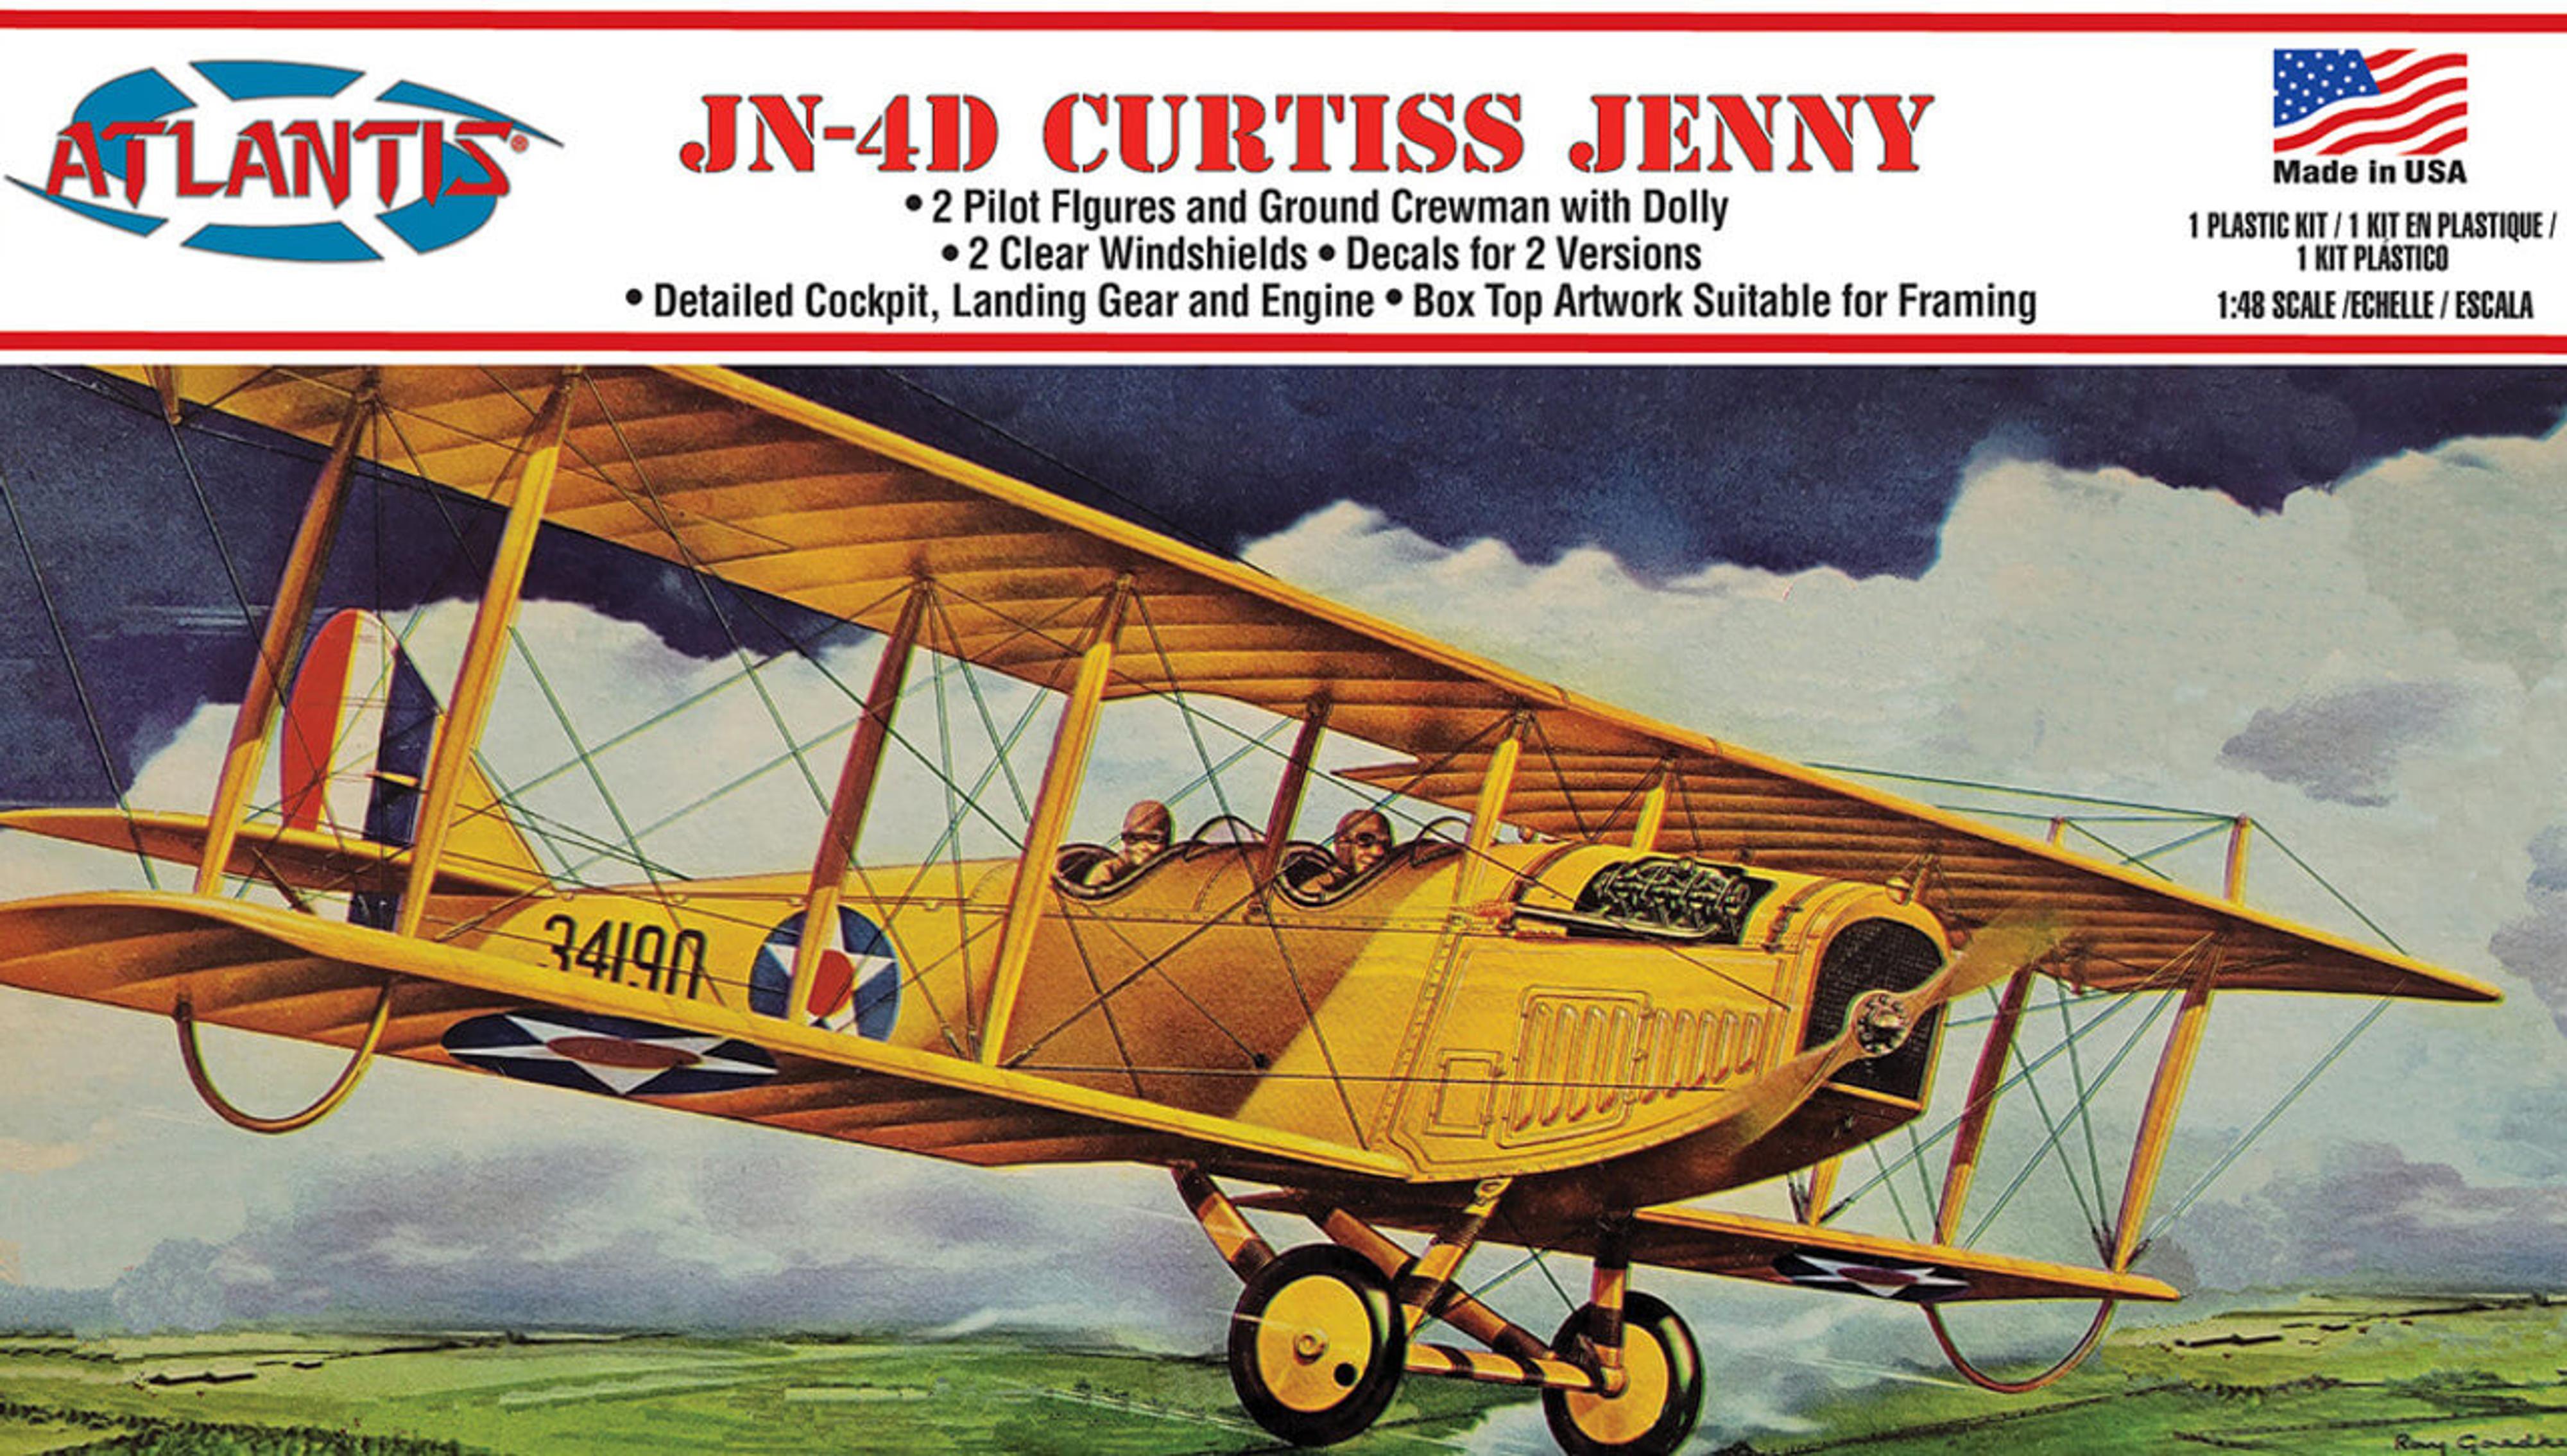 Atlantis 1/48 JN-4D Curtiss Jenny Model Kit